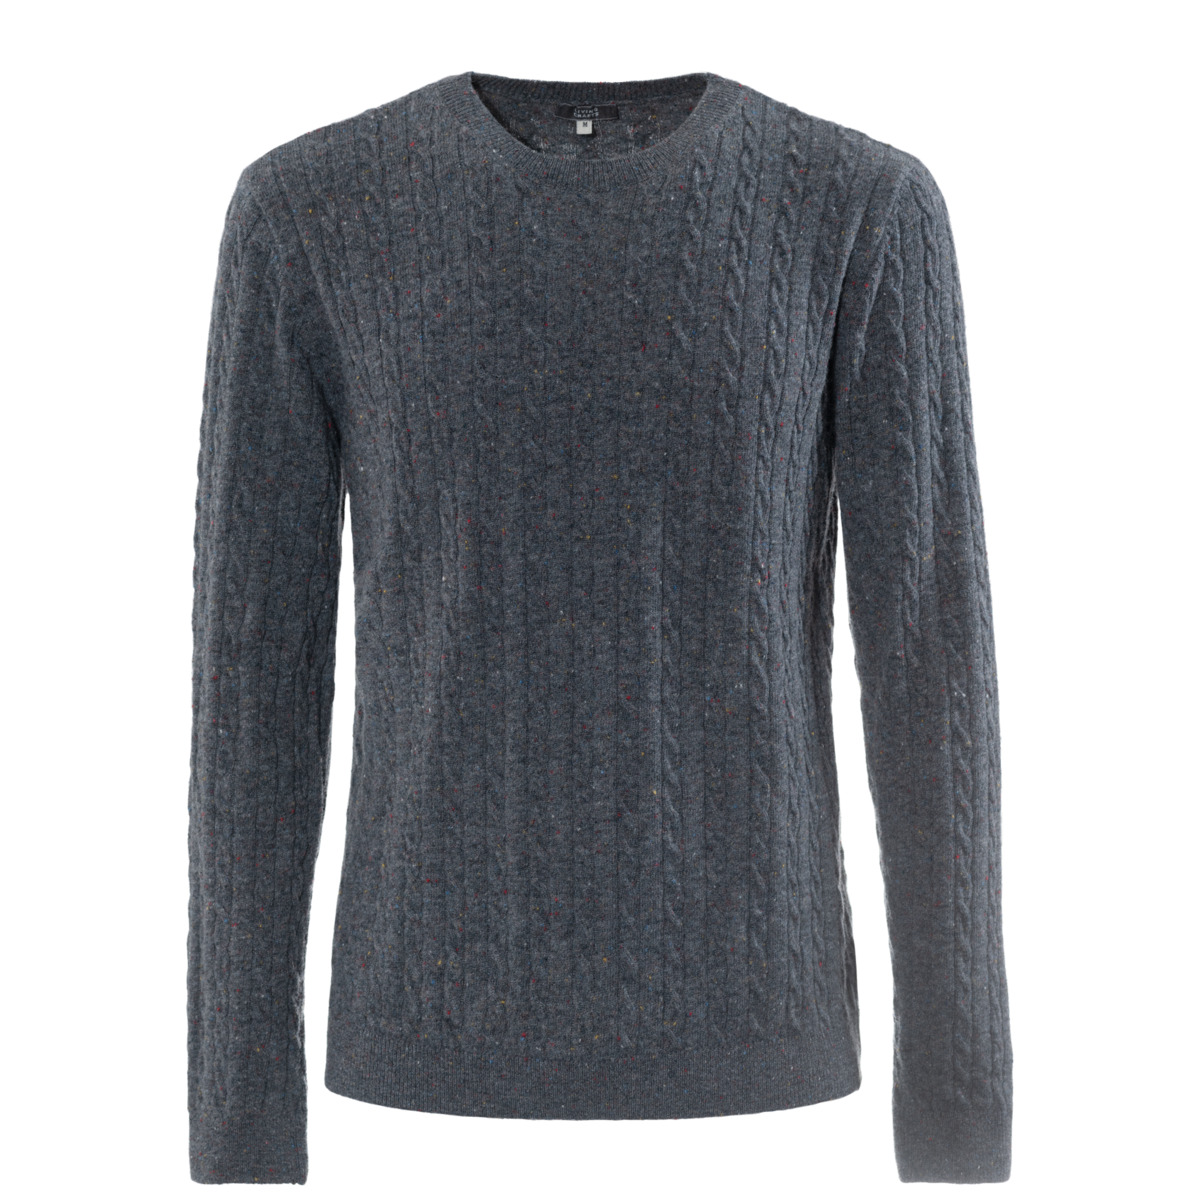 Grey Sweater, NICOLAS